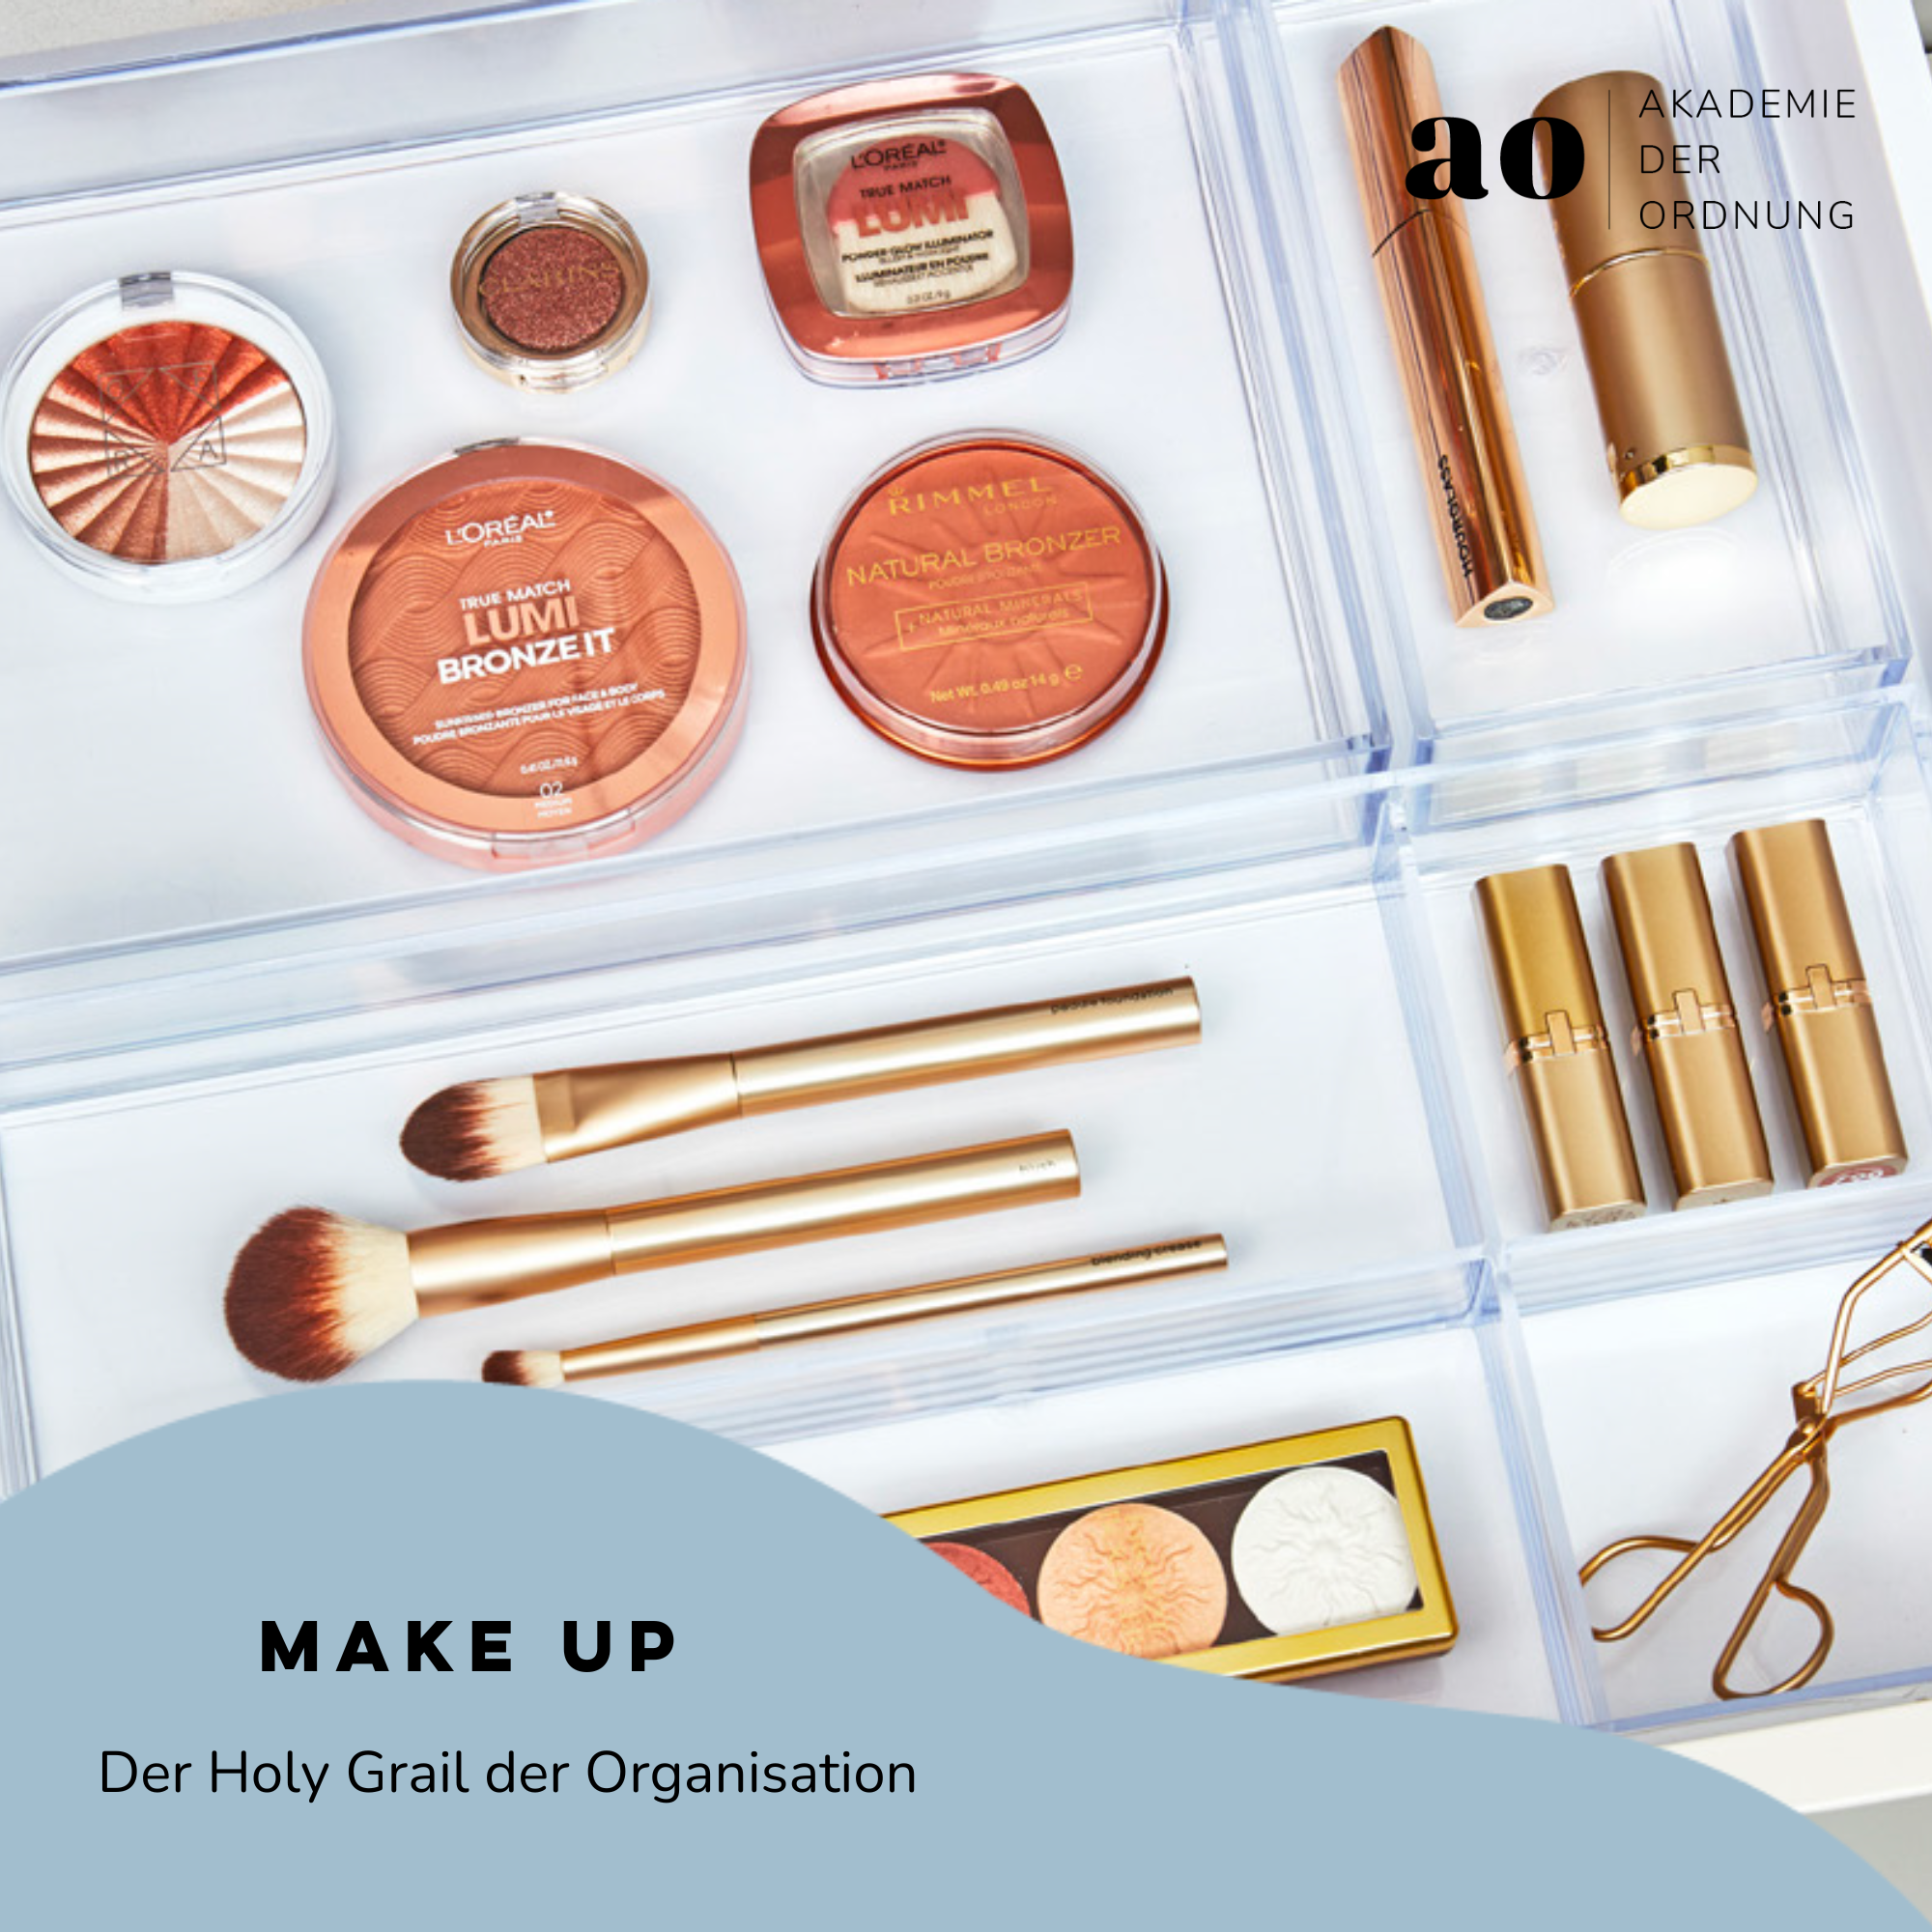 Akademie der Ordnung - Make Up - Der Holy Grail der Organisation